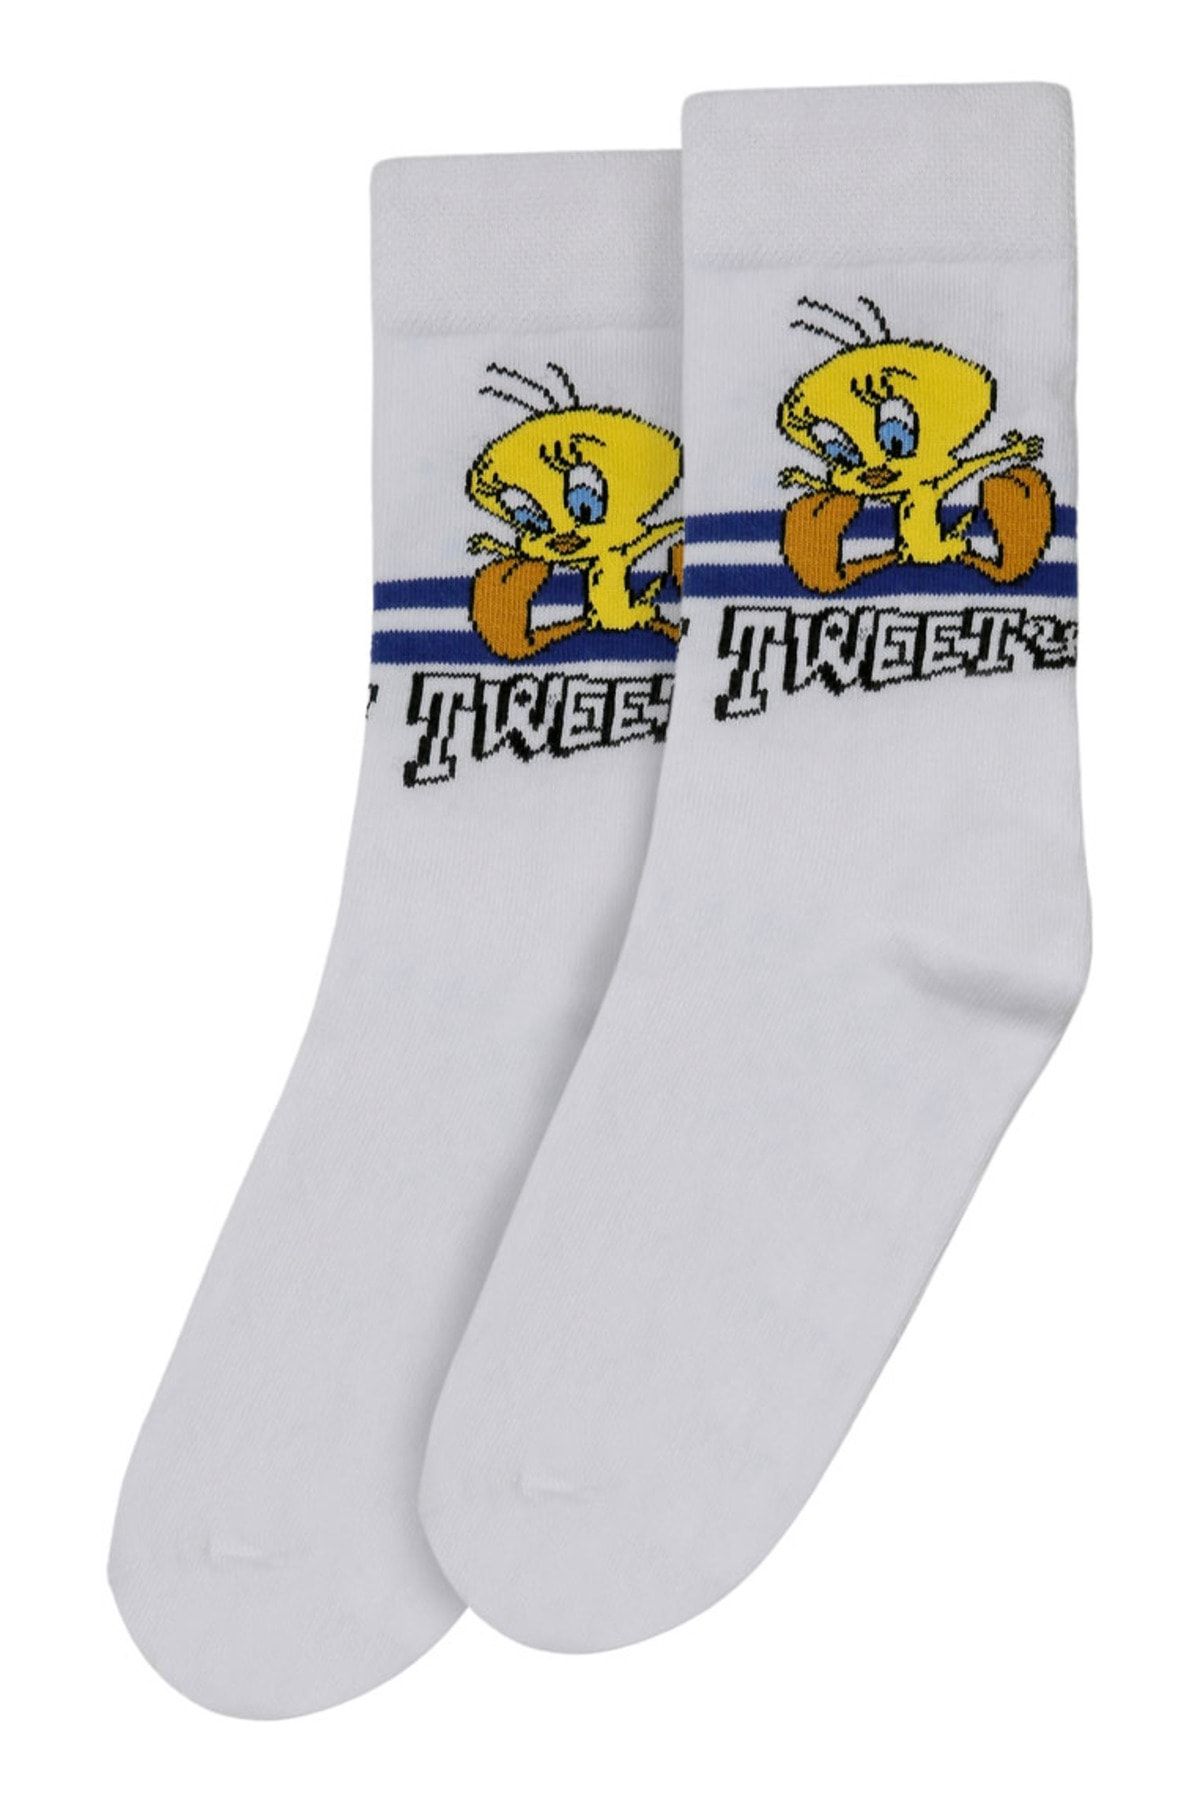 Dogo Unisex Vegan Beyaz Çorap - Warner Bros Tweety Stripes Tasarım